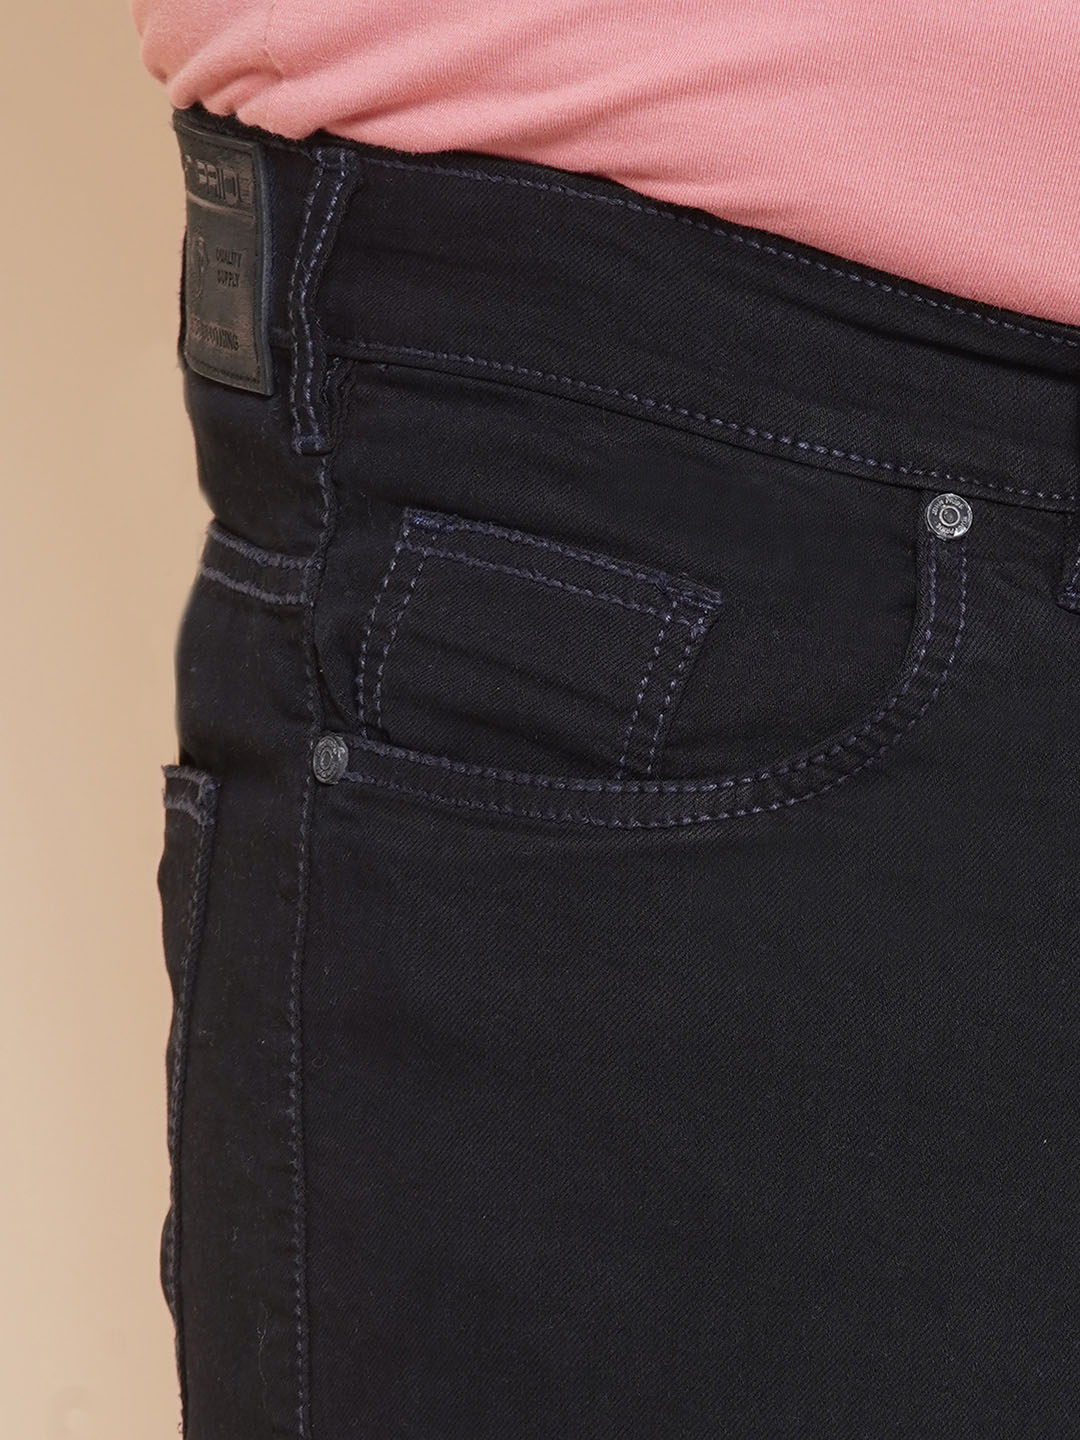 bottomwear/jeans/EJPJ25107/ejpj25107-2.jpg